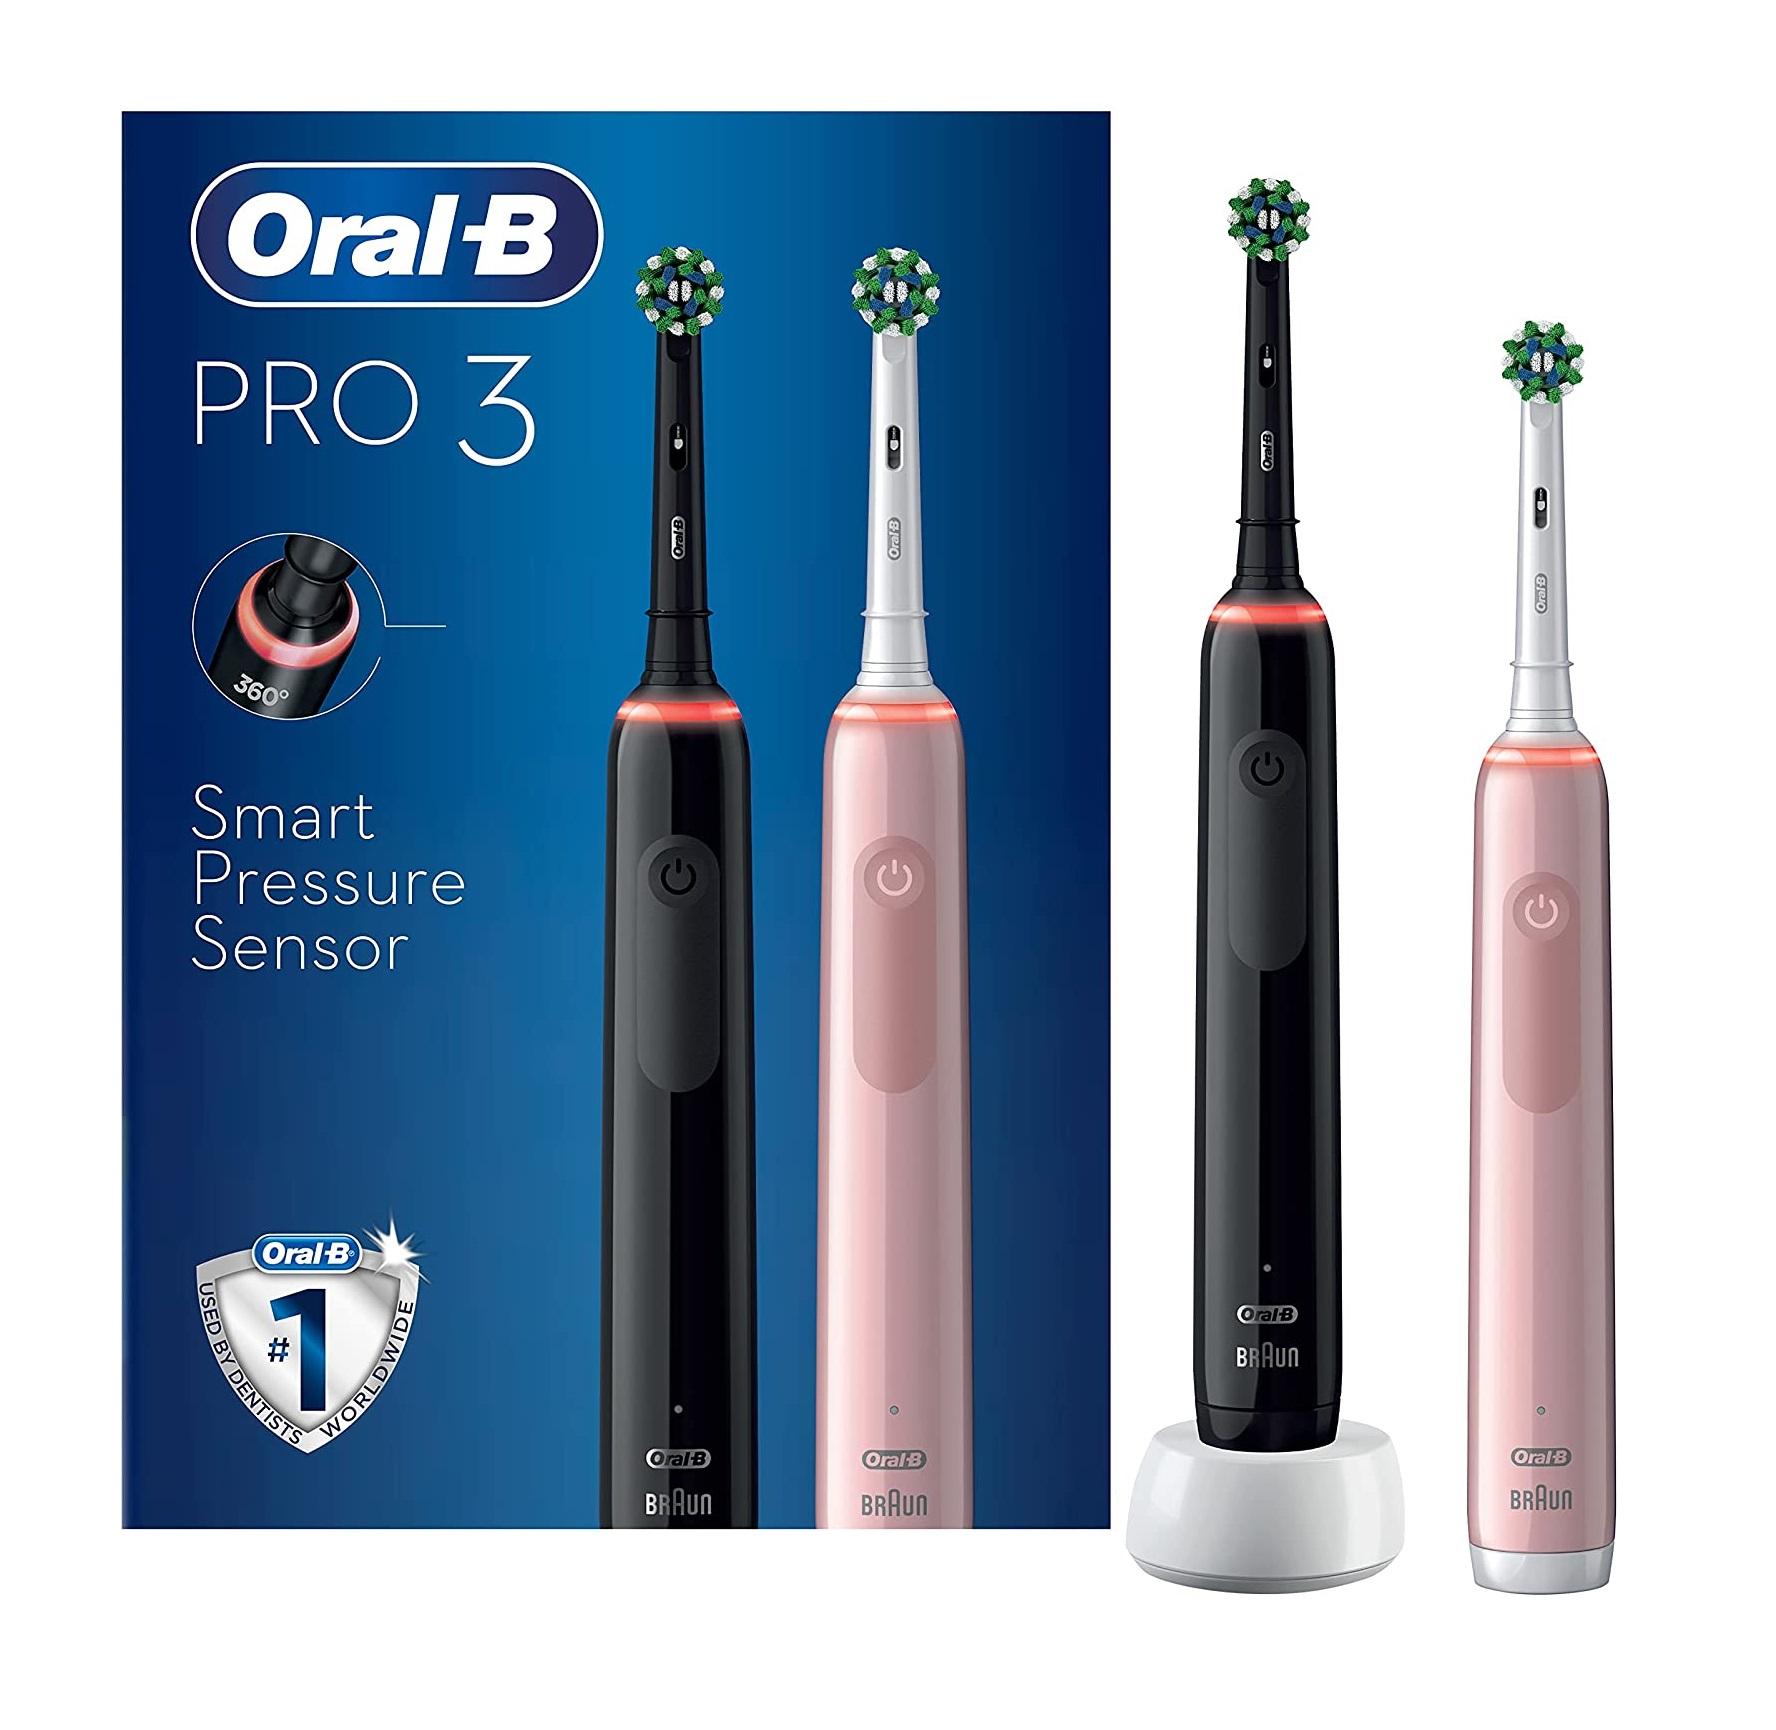 Set 2 Bàn Chải Đánh Răng Chạy Điện Oral-B Pro 3 3900 CrossAction, Oral B Electric Toothbrush, Công Nghệ 3D Làm Sạch Sâu, Nhập Đức, Hàng Chính Hãng